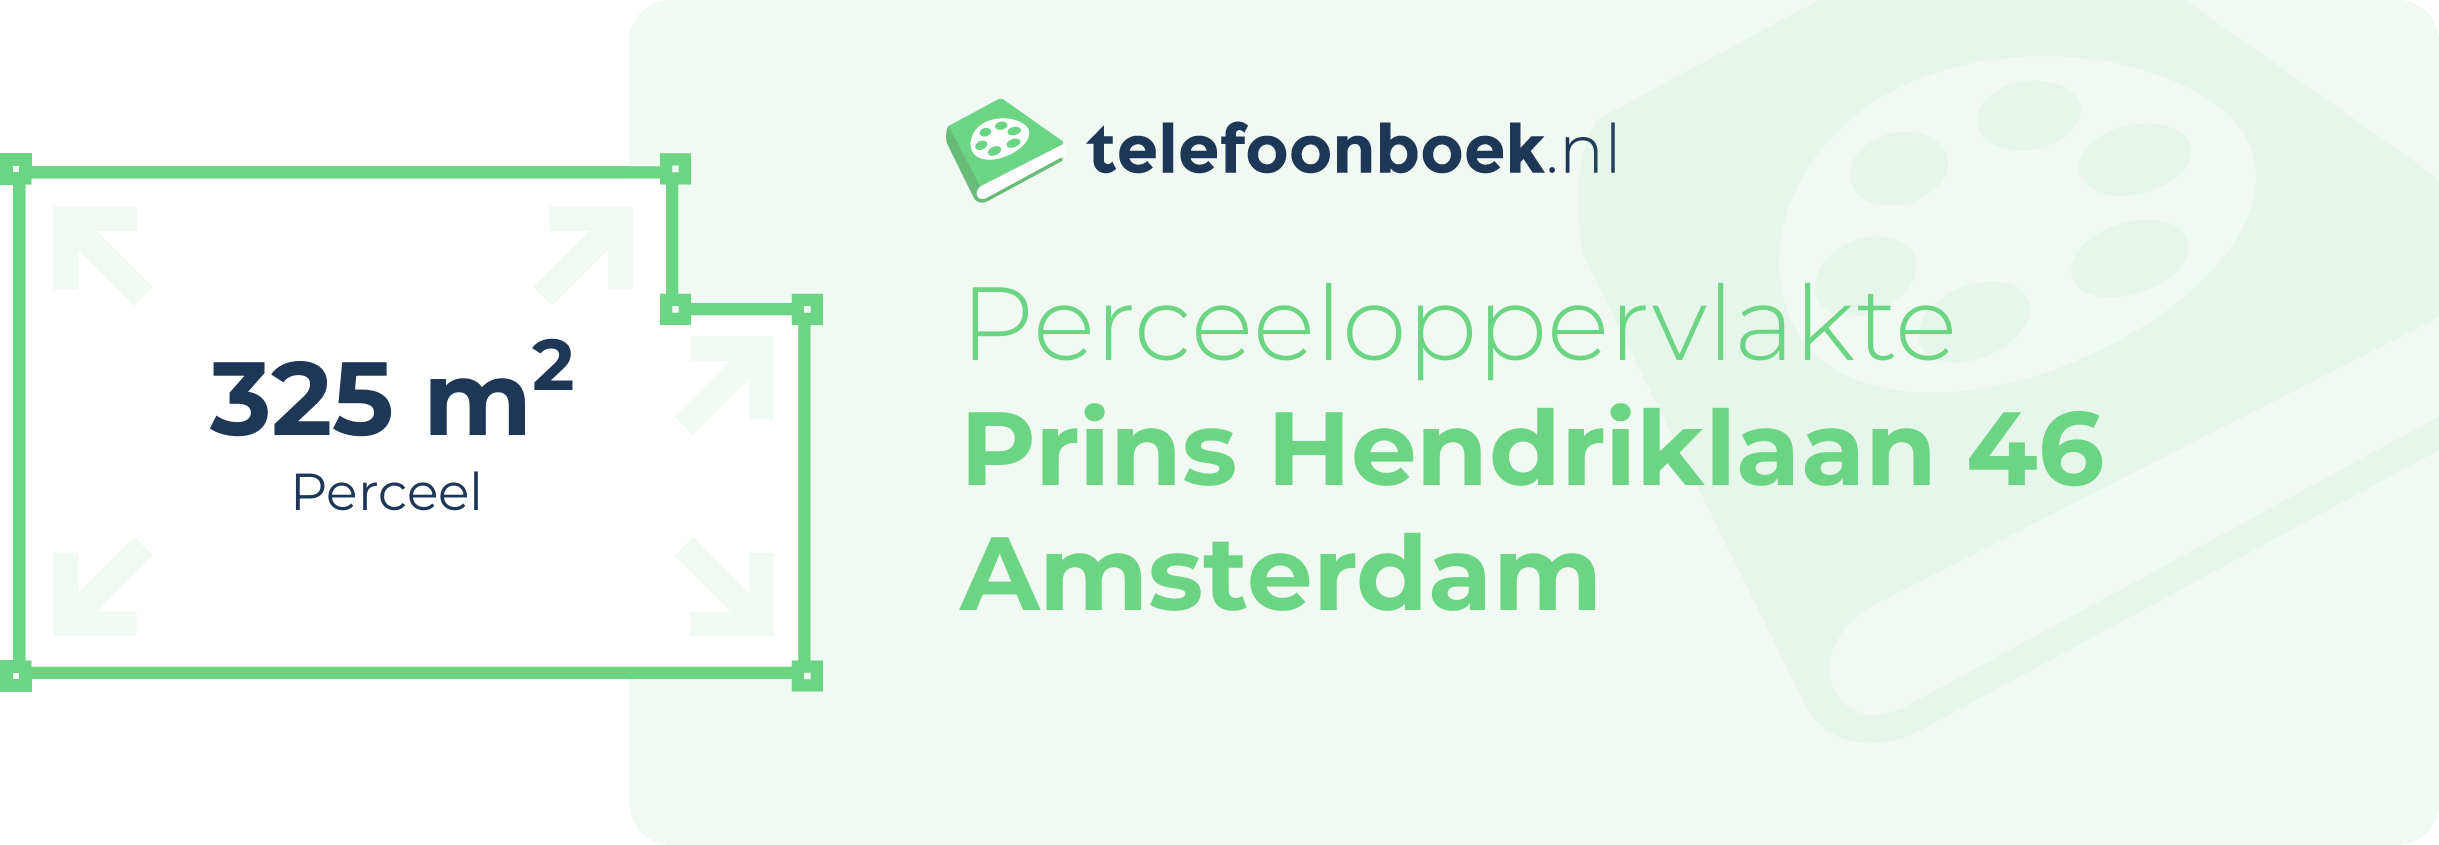 Perceeloppervlakte Prins Hendriklaan 46 Amsterdam